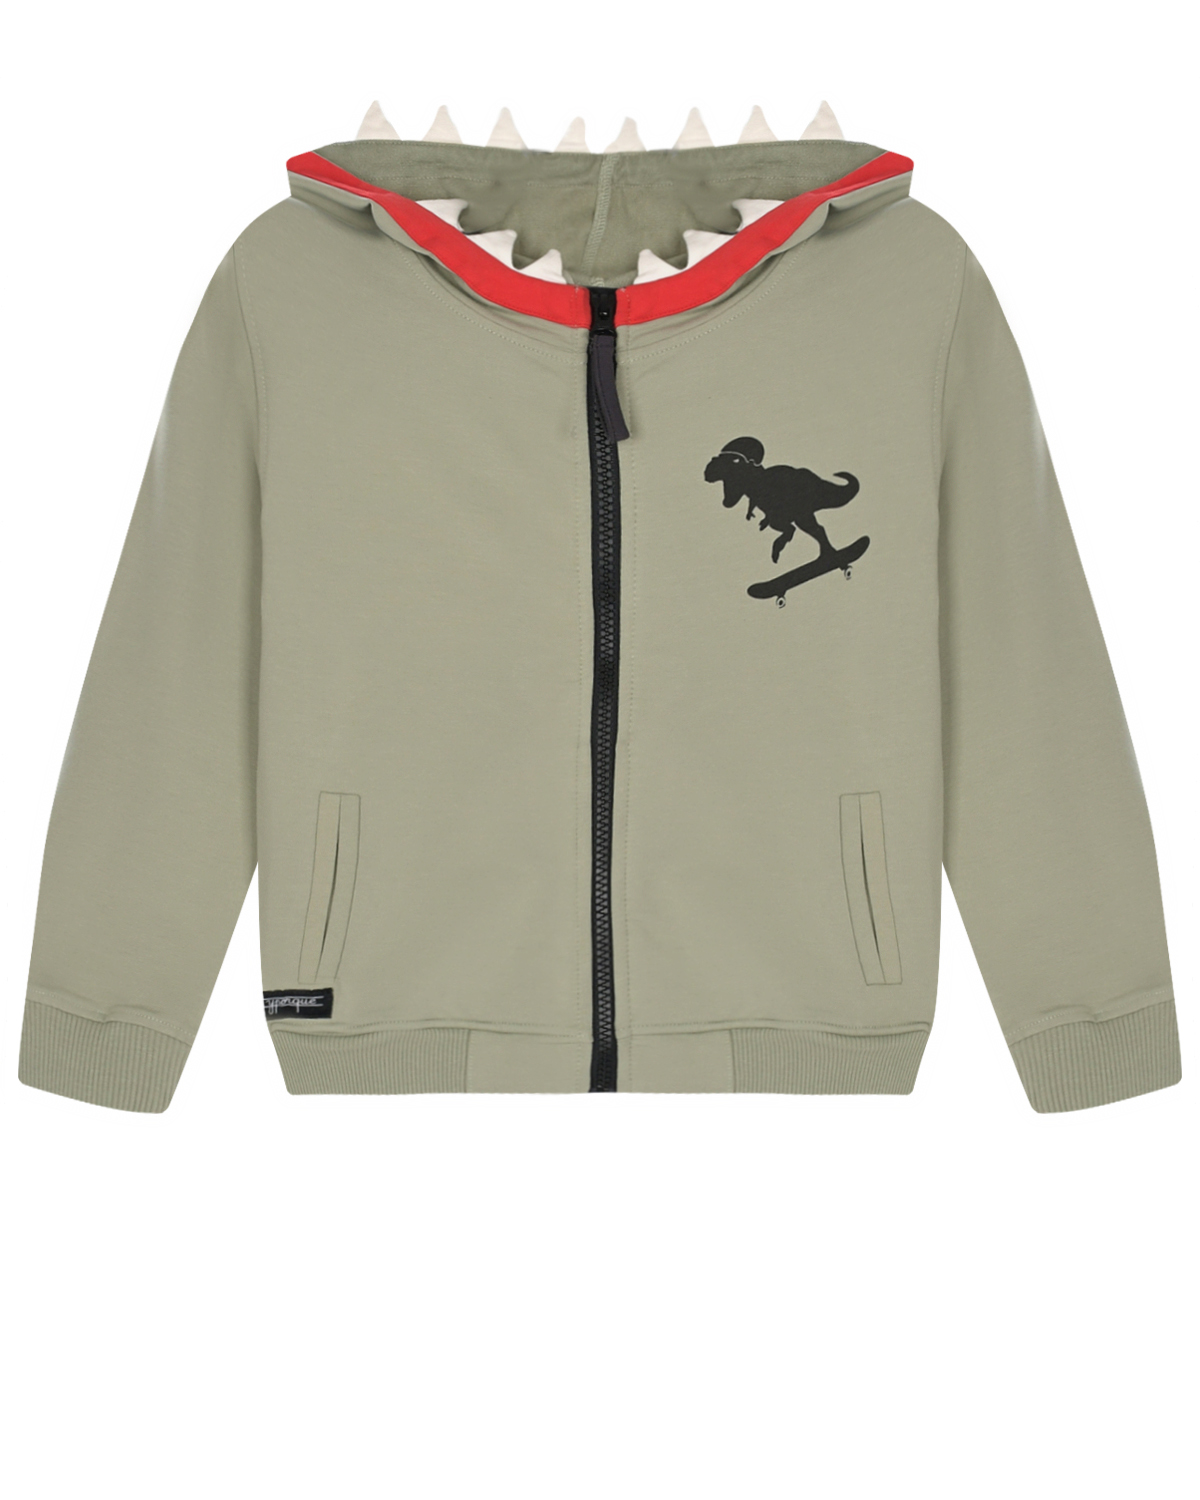 Спортивная куртка с принтом "динозавр" Yporque, размер 128, цвет хаки - фото 1